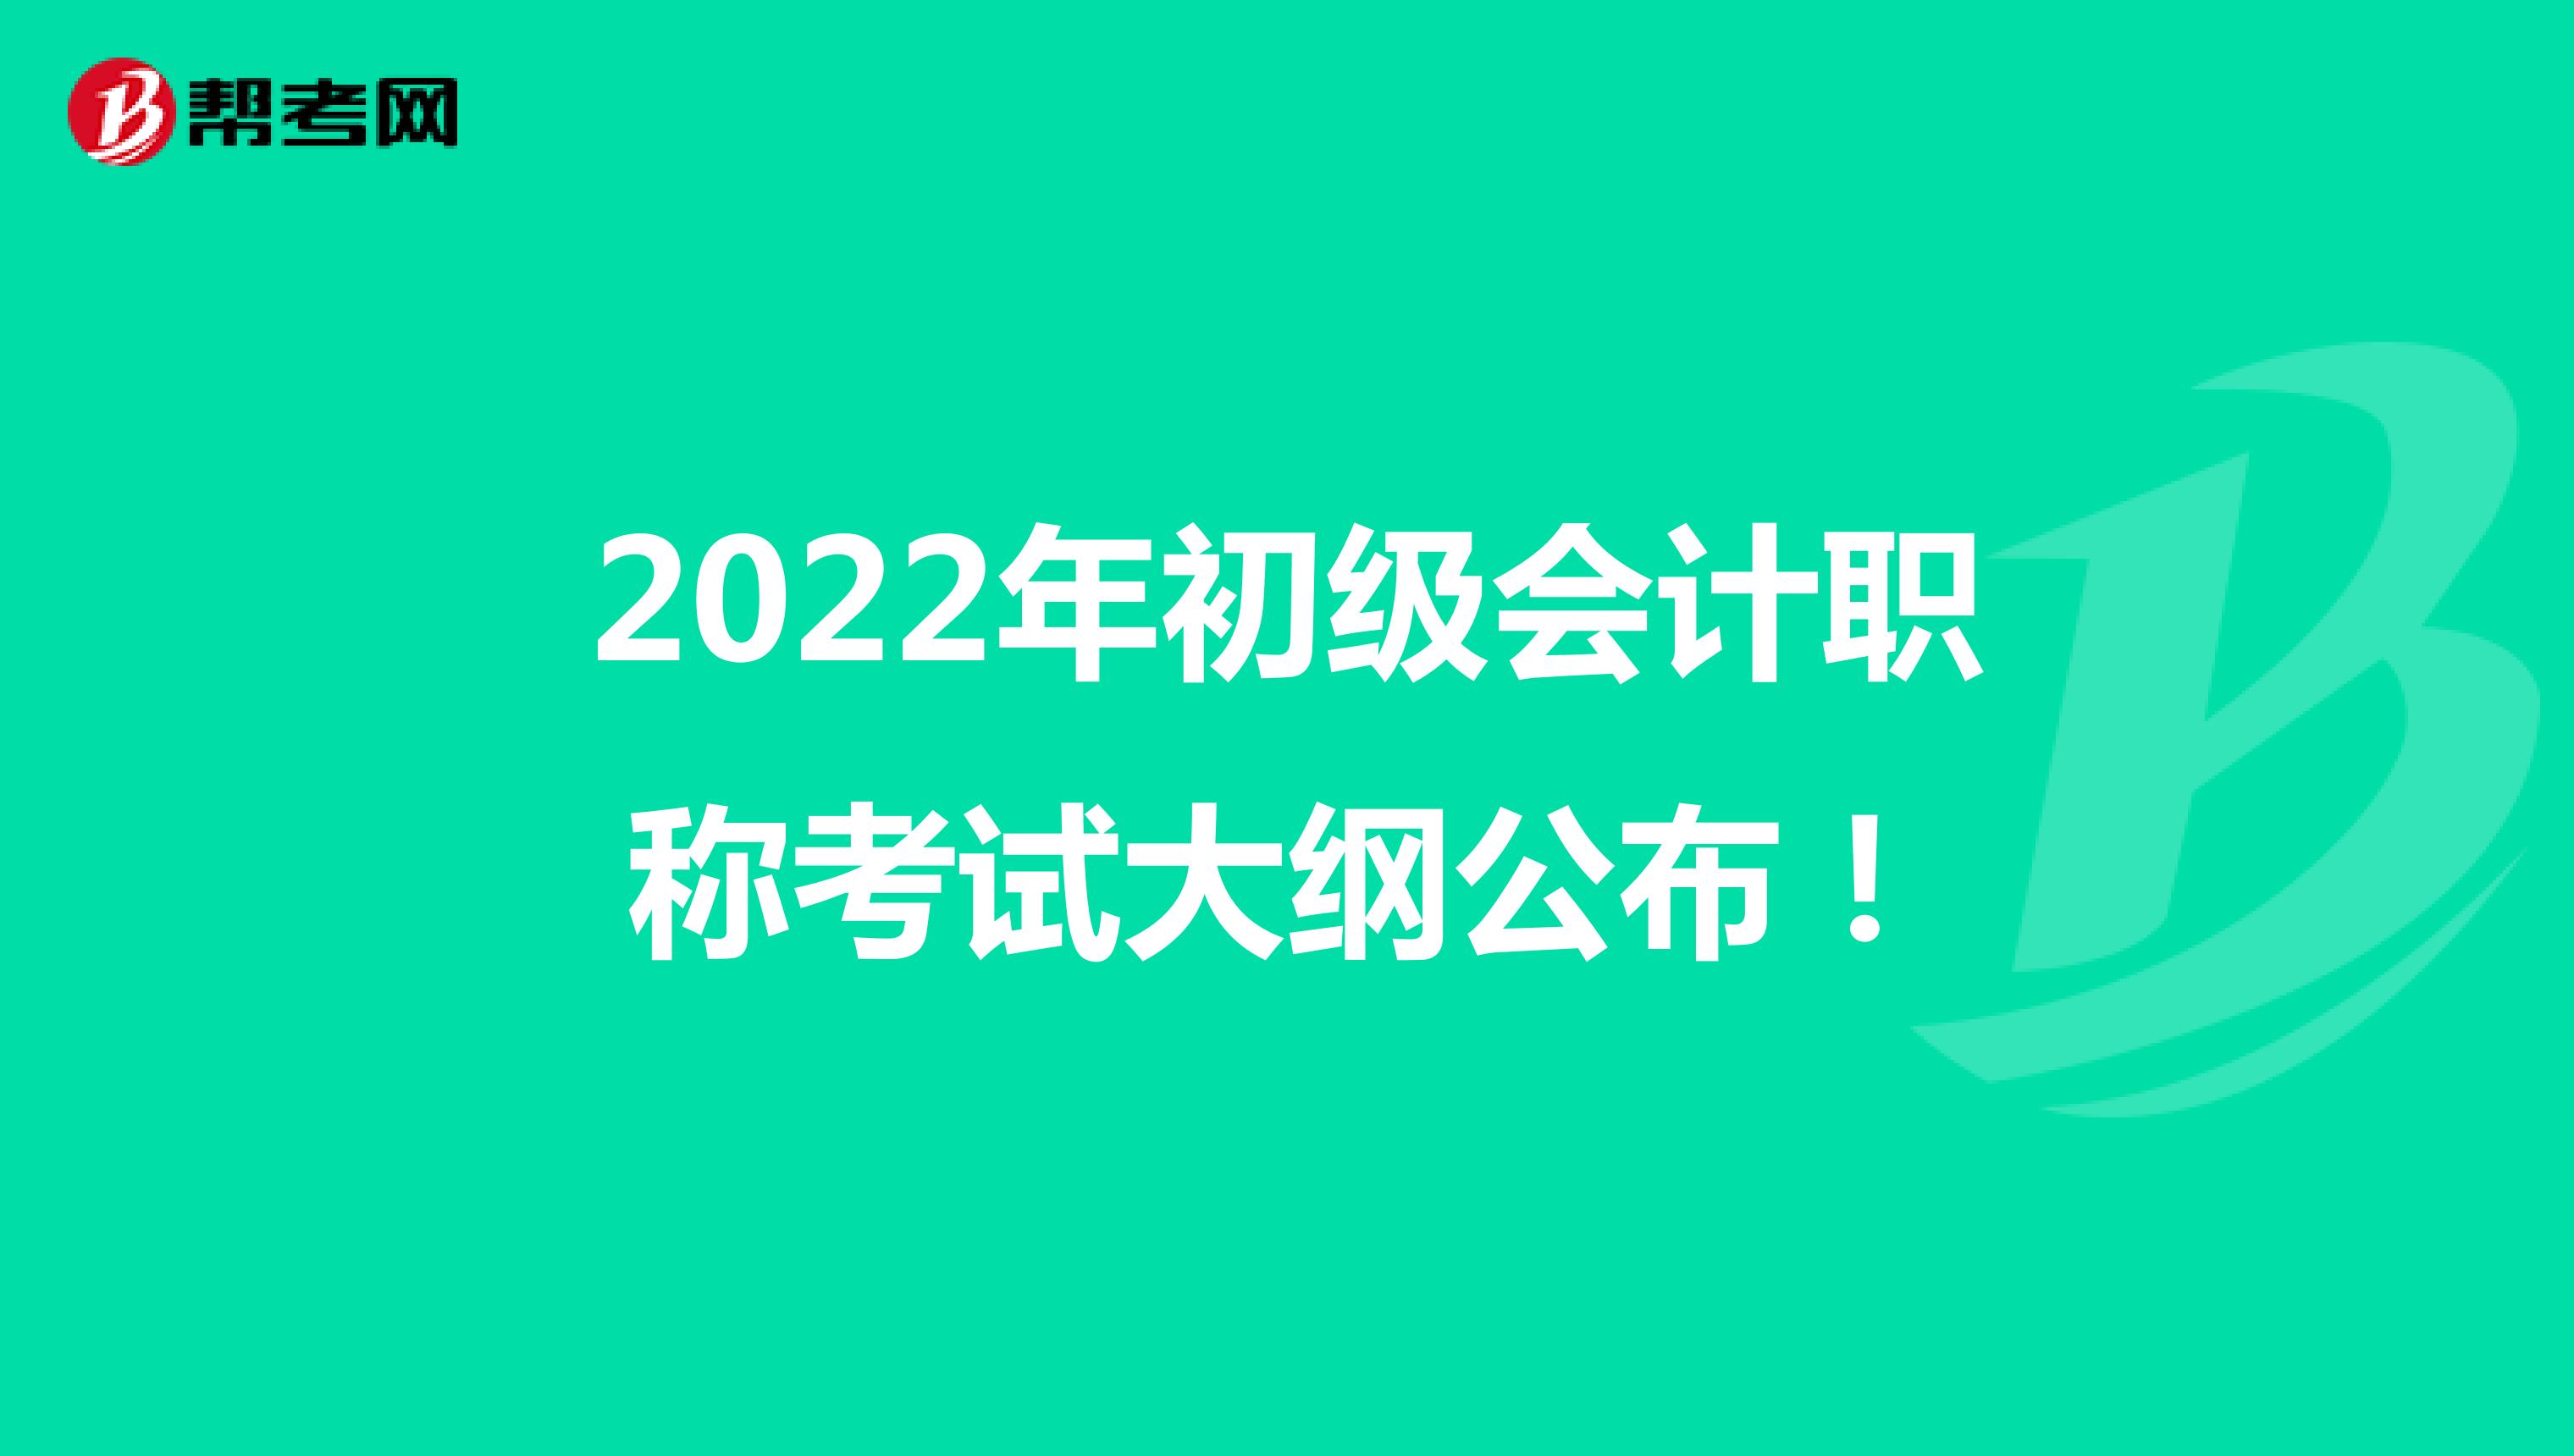 2022年初级会计职称考试大纲公布！